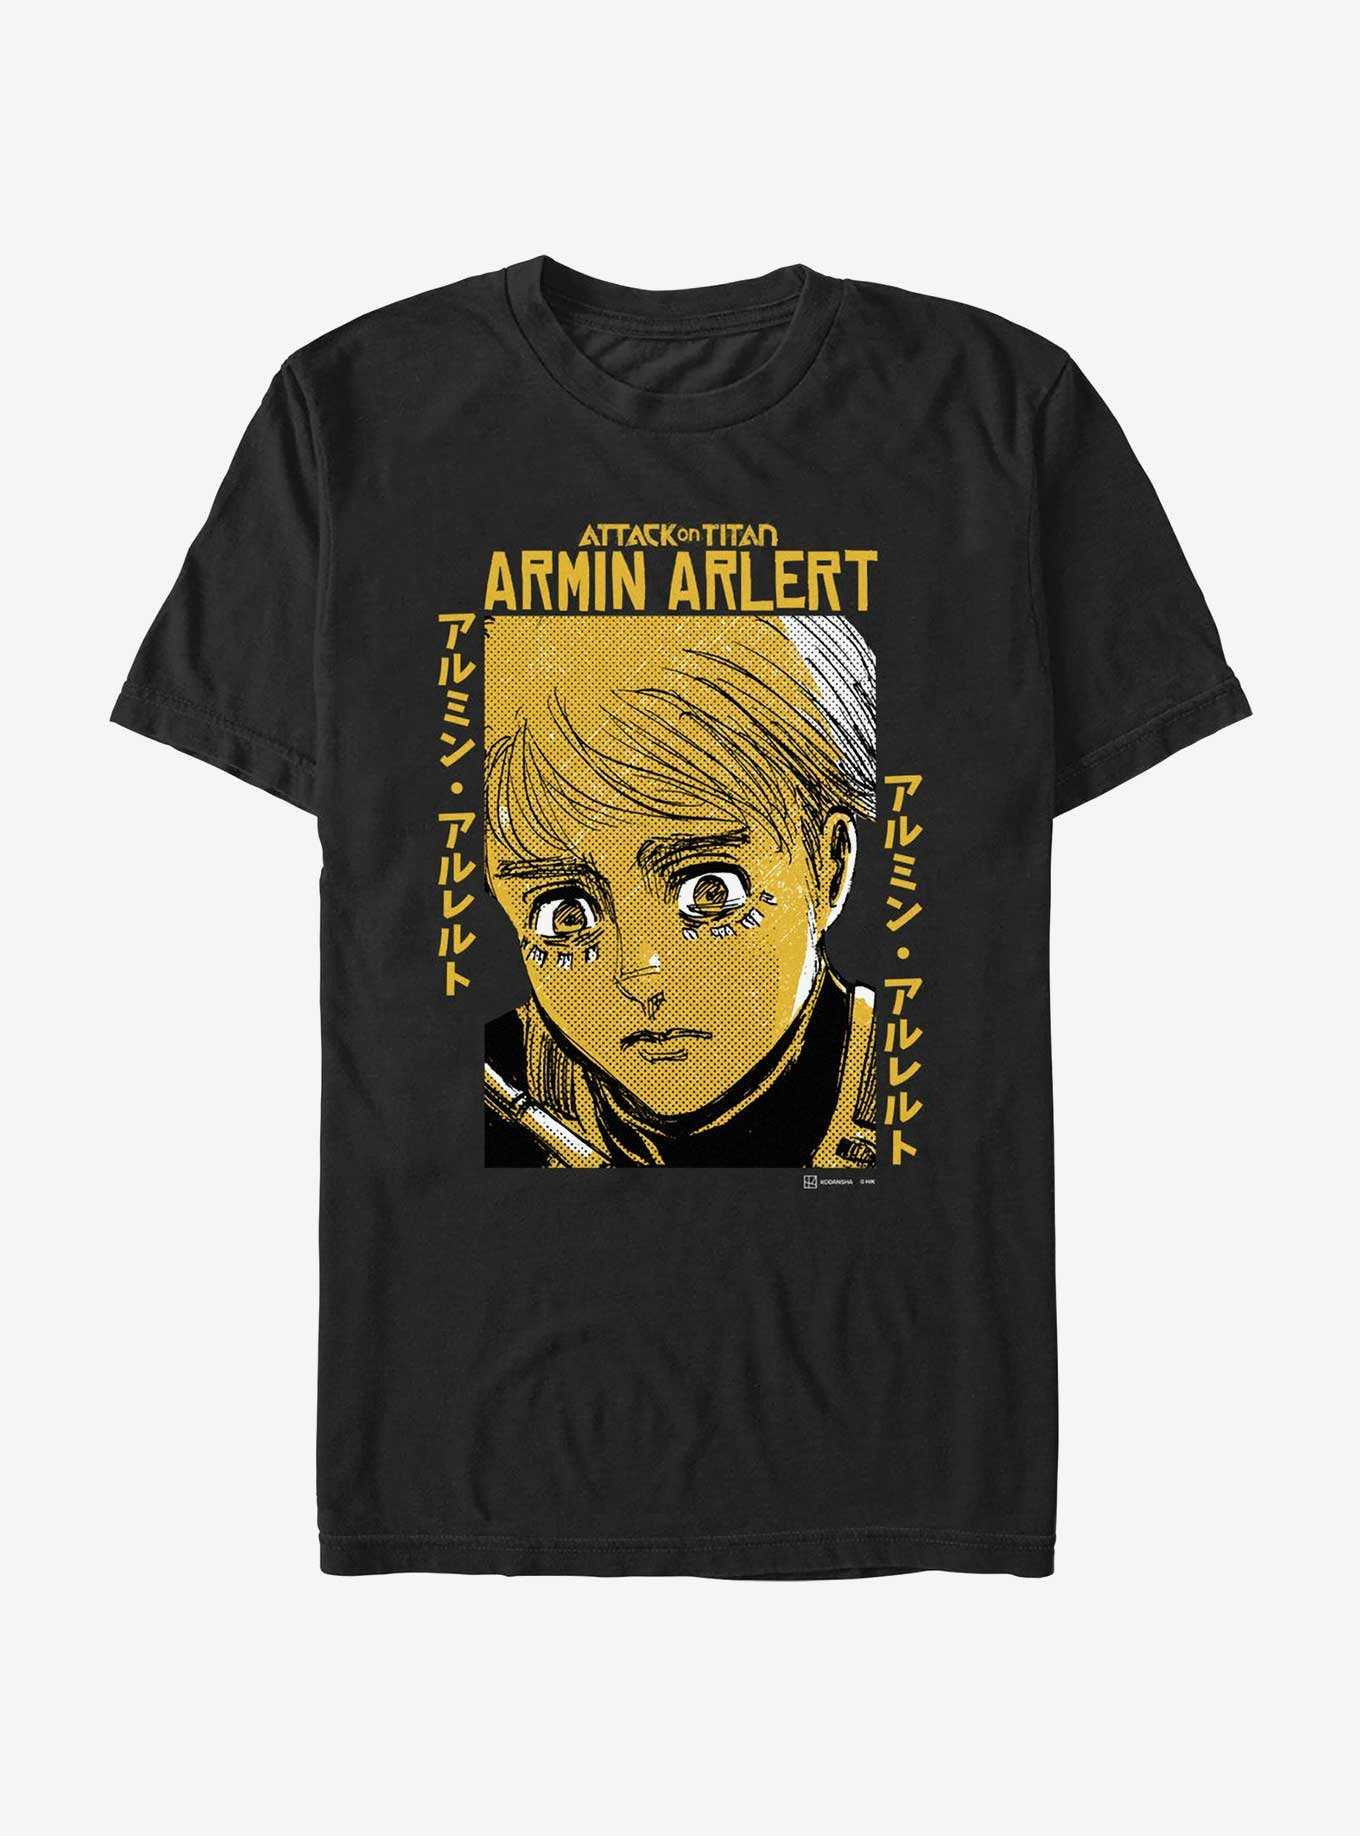 Attack on Titan Armin Arlert Portrait T-Shirt Hot Topic Web Exclusive, , hi-res